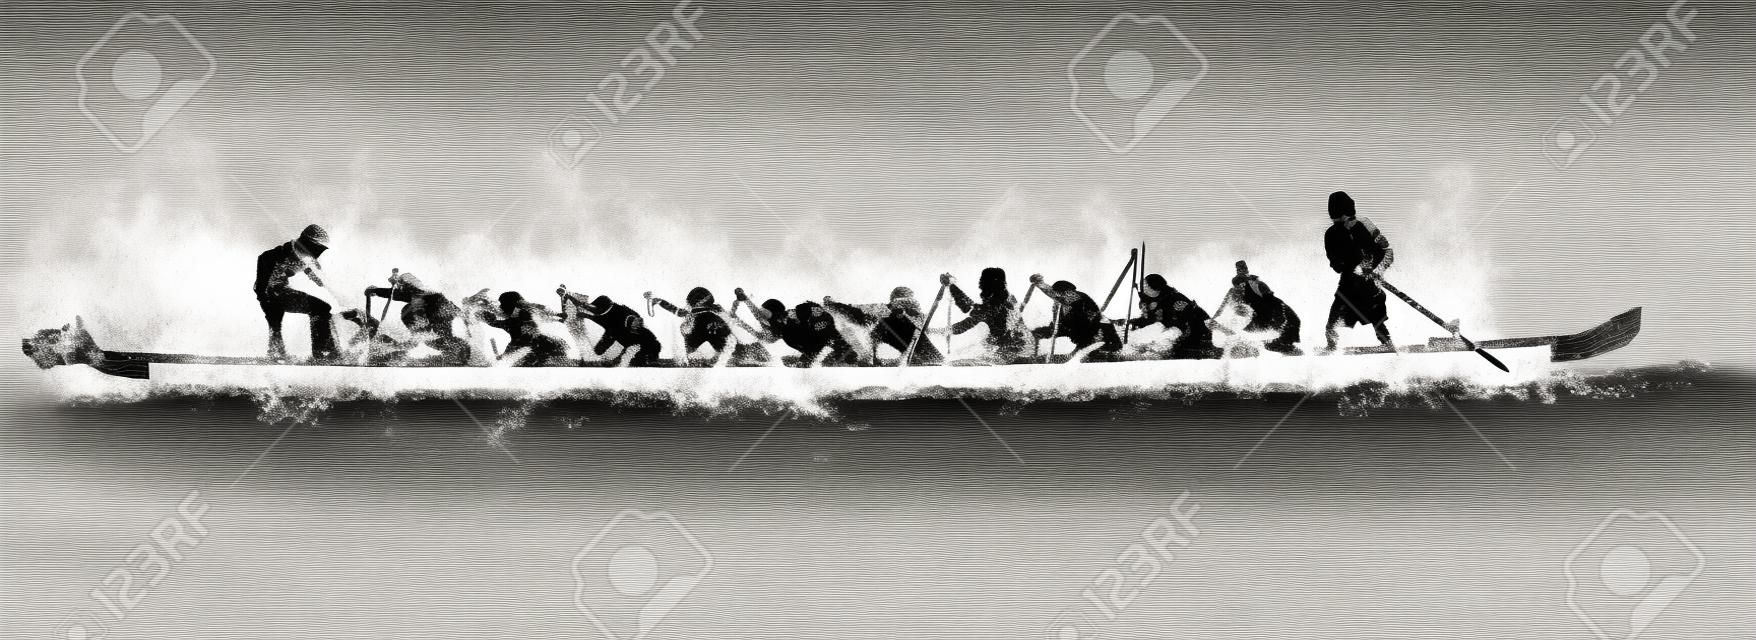 Illustration von einem Drachenboot in Aktion, schwarz und weiß auf weißem Hintergrund